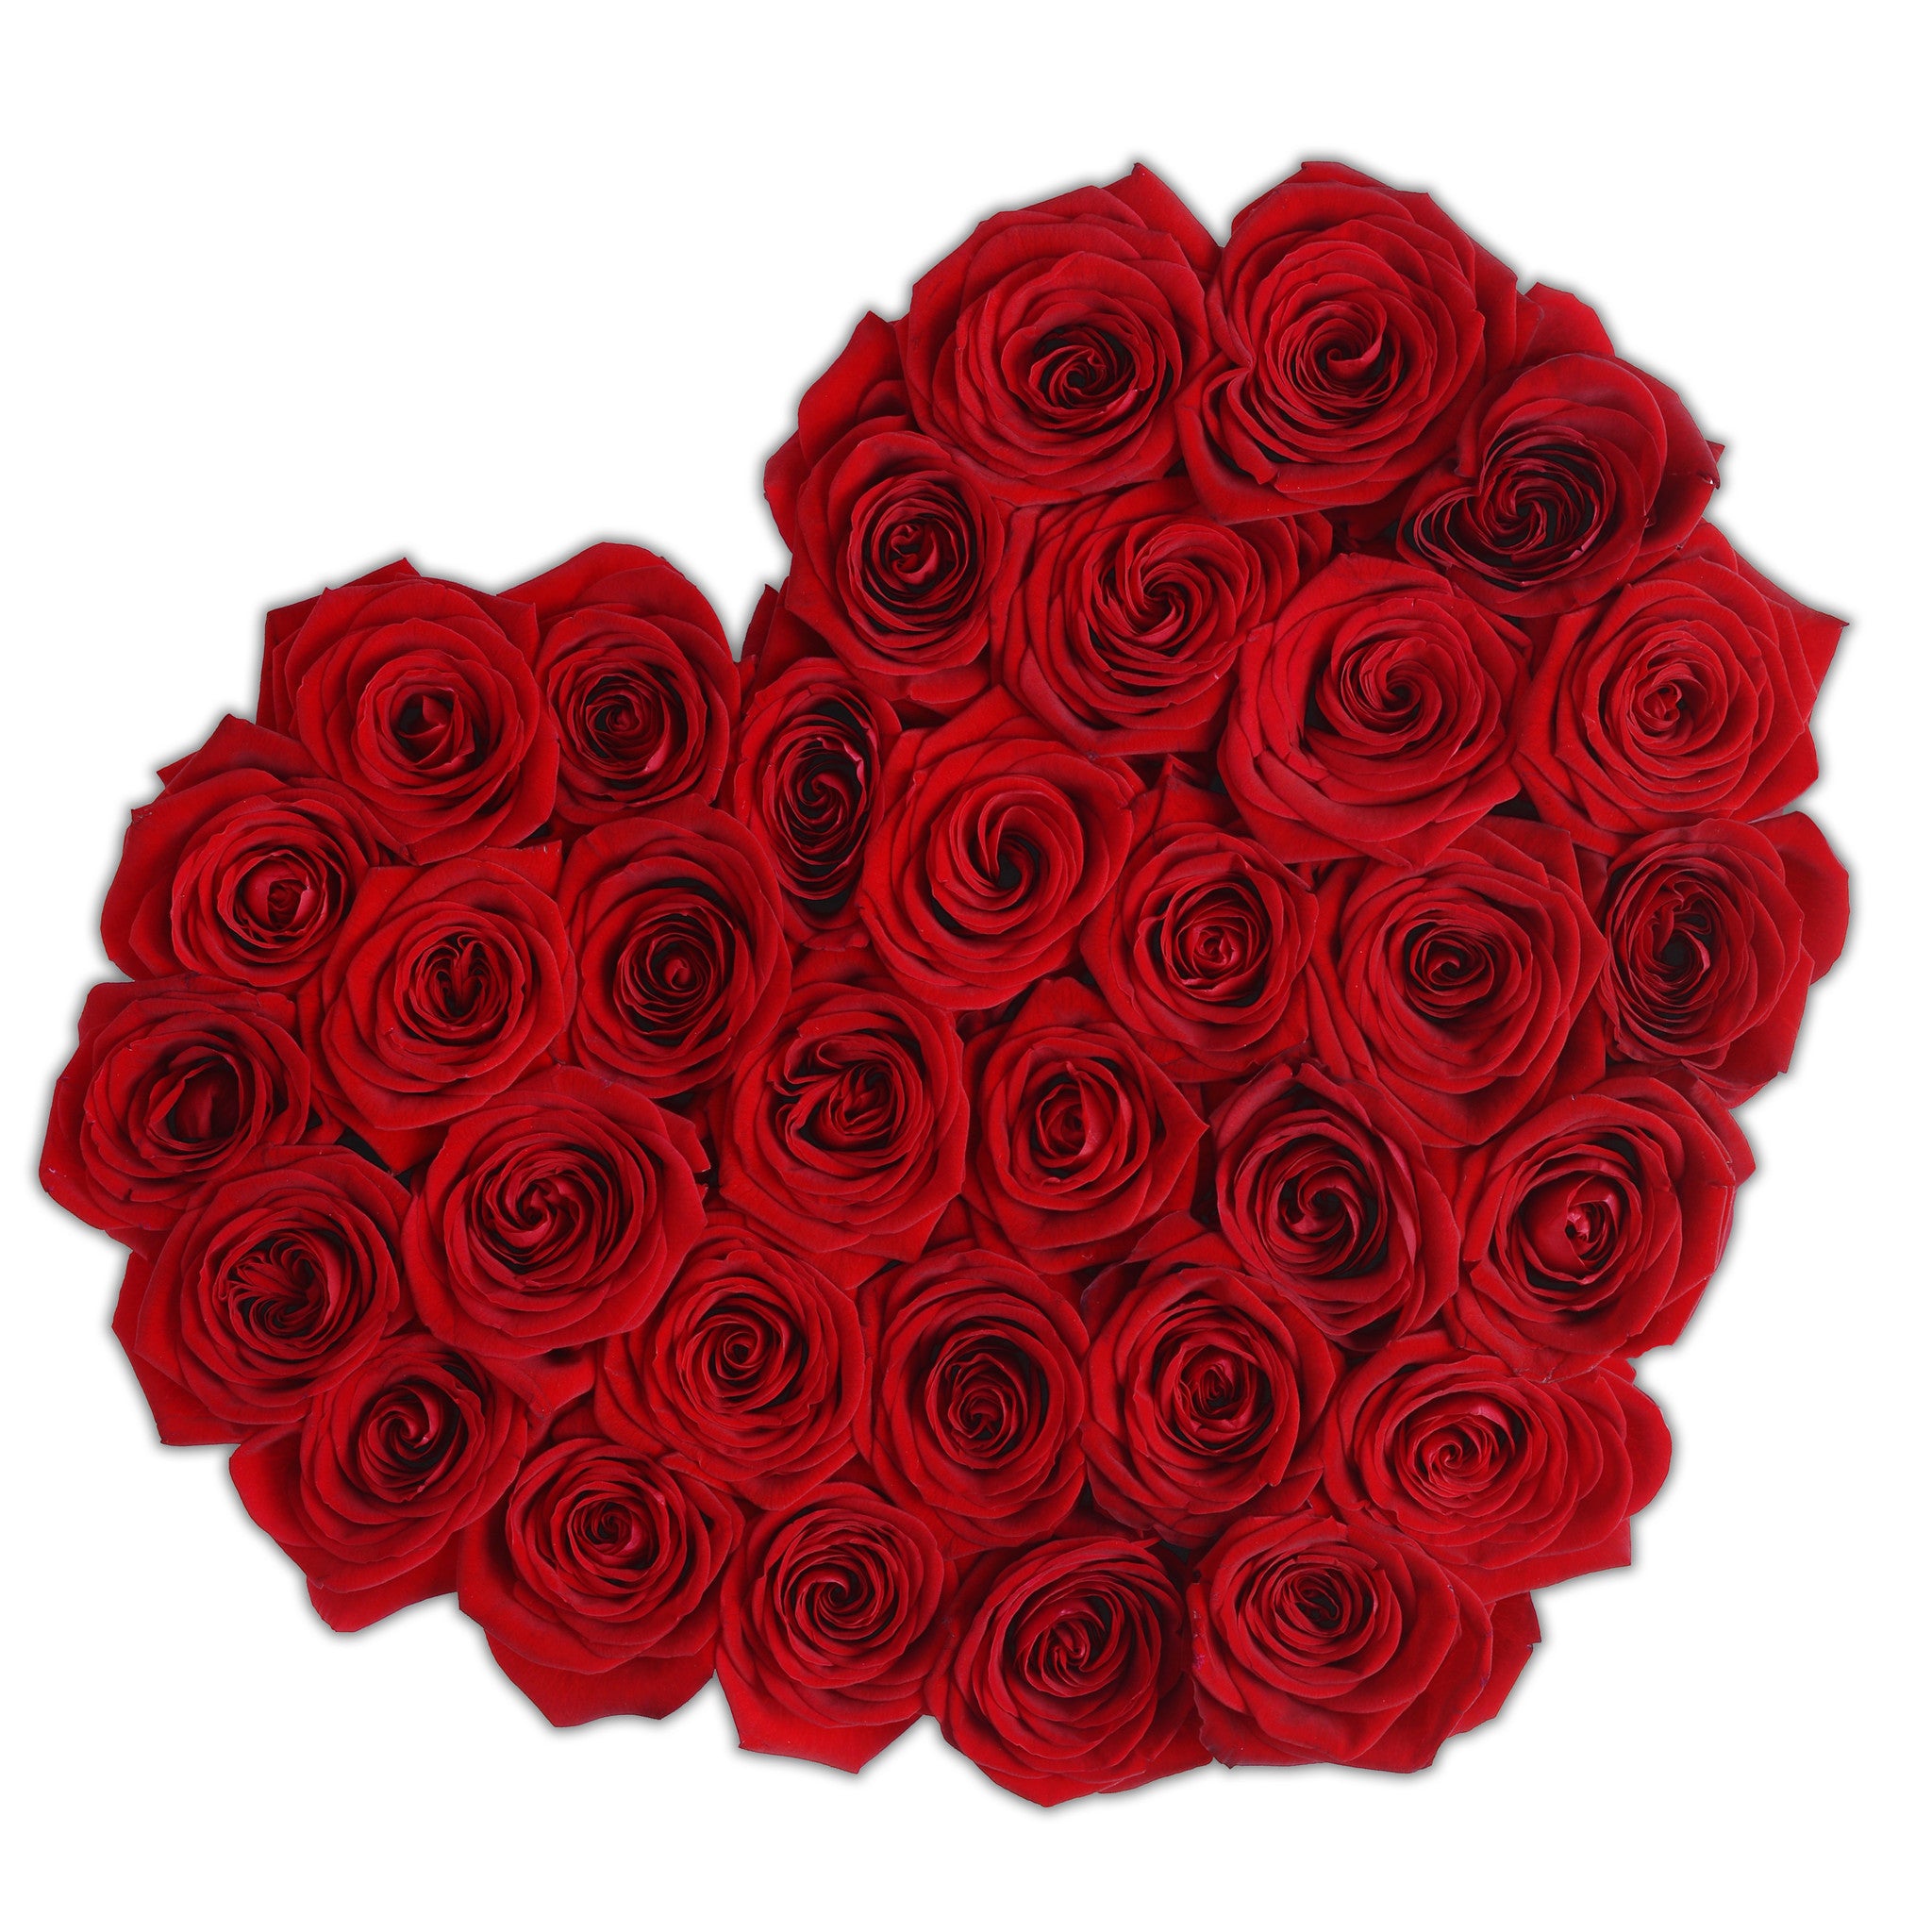 Heart - Red Roses - Black Box - The Million Roses Budapest